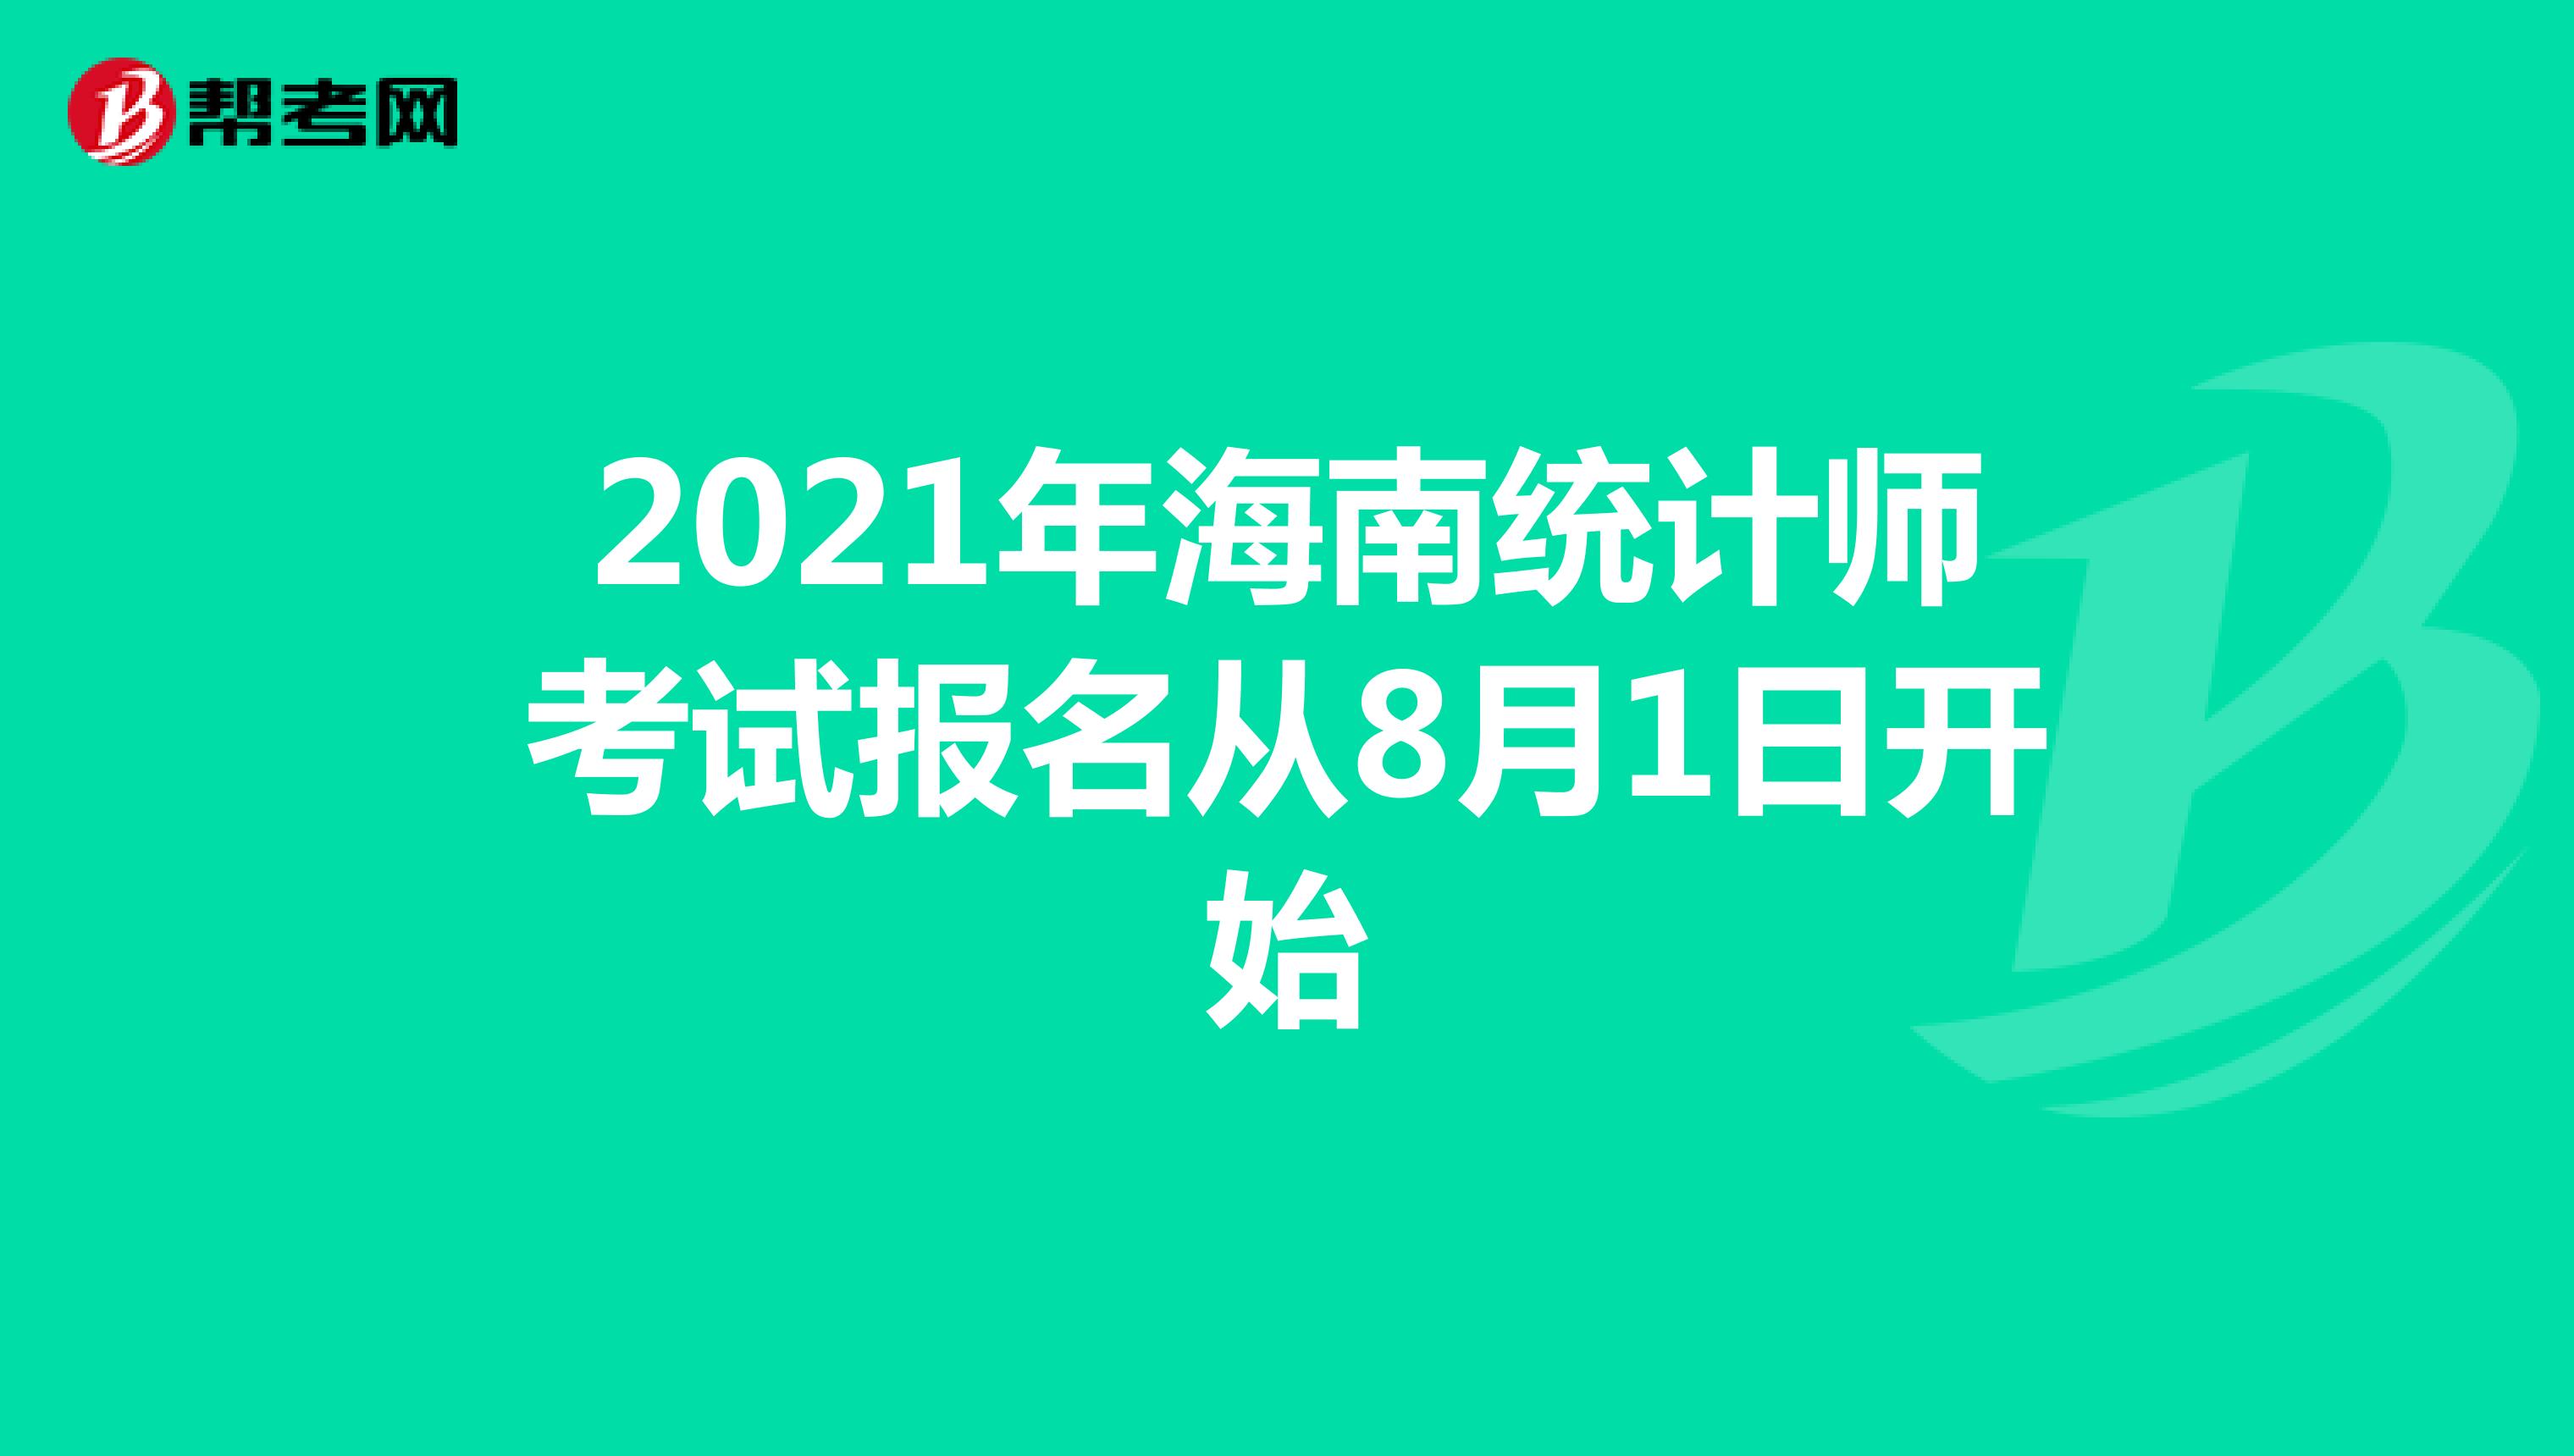 2021年海南统计师考试报名从8月1日开始